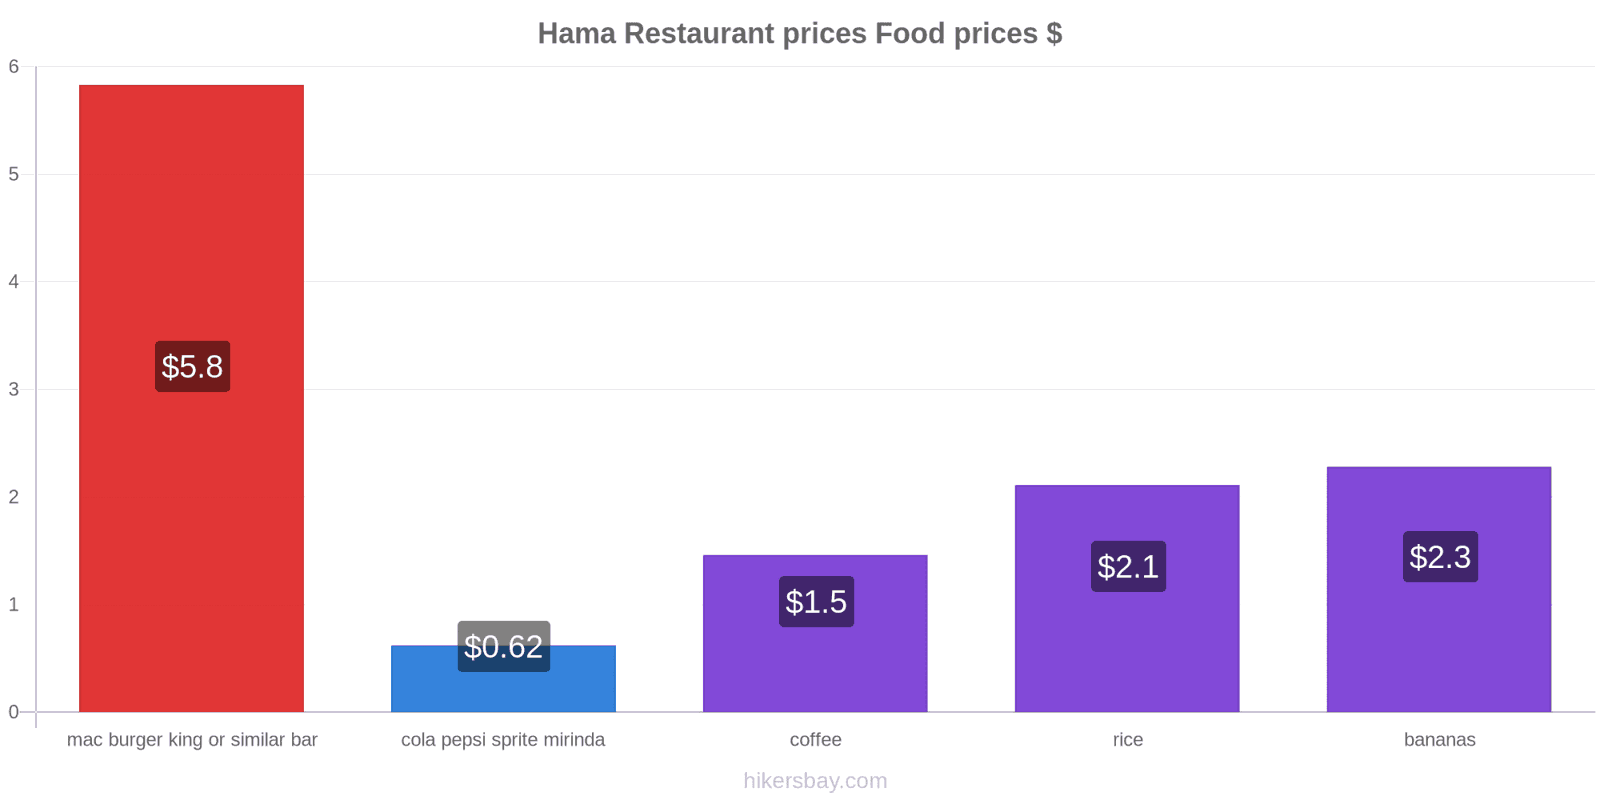 Hama price changes hikersbay.com